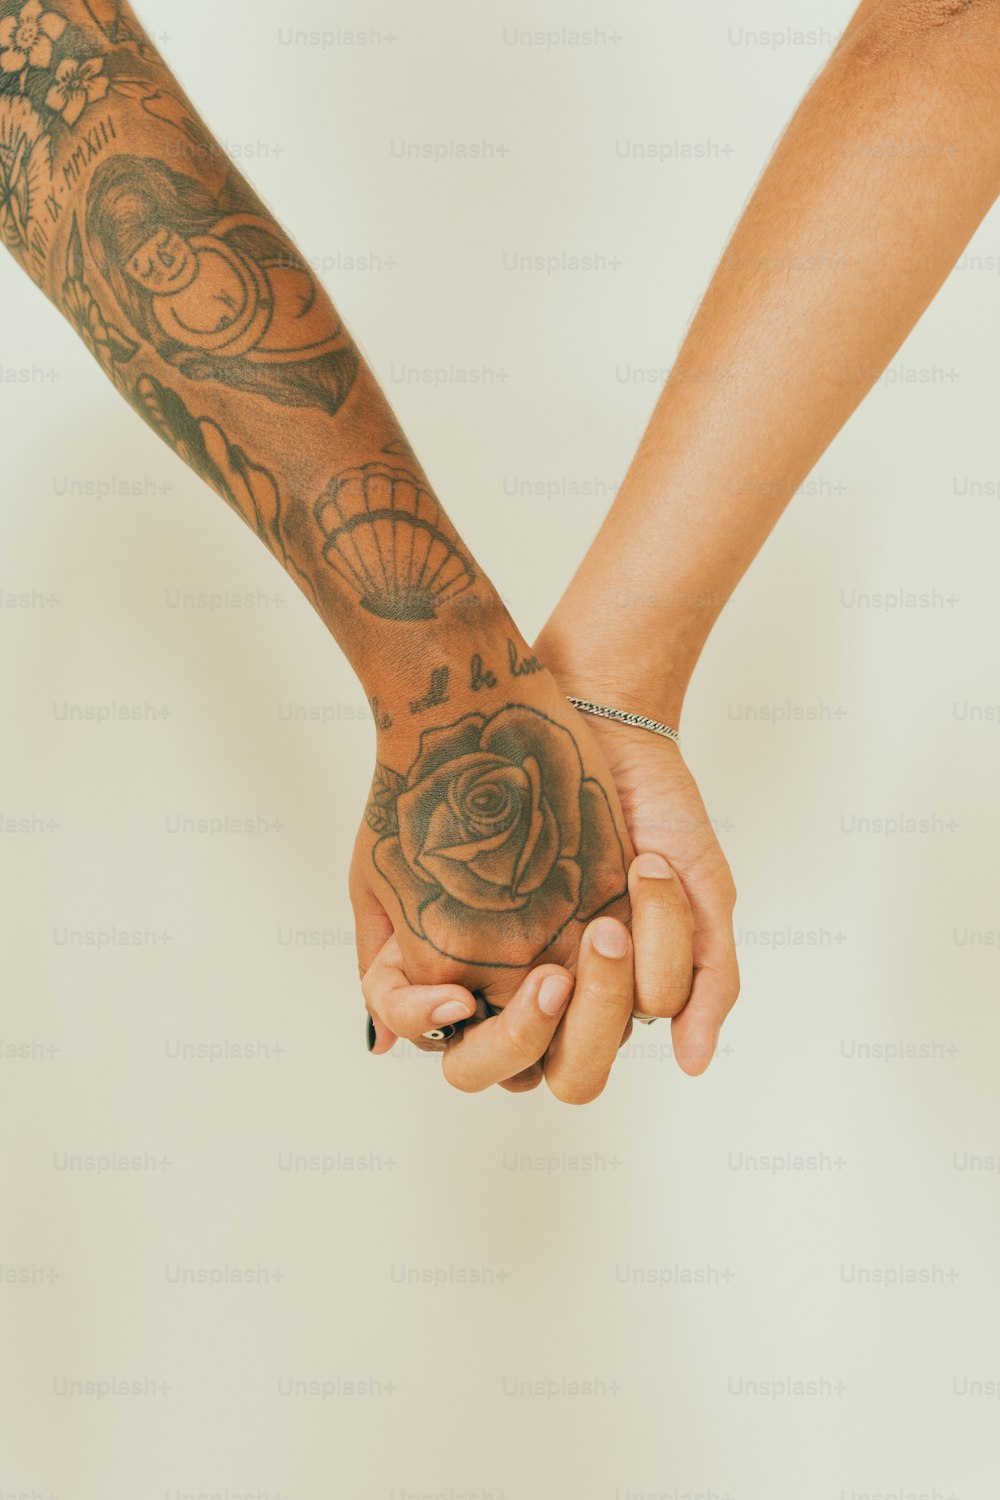 Deux personnes se tenant la main avec des tatouages sur les bras